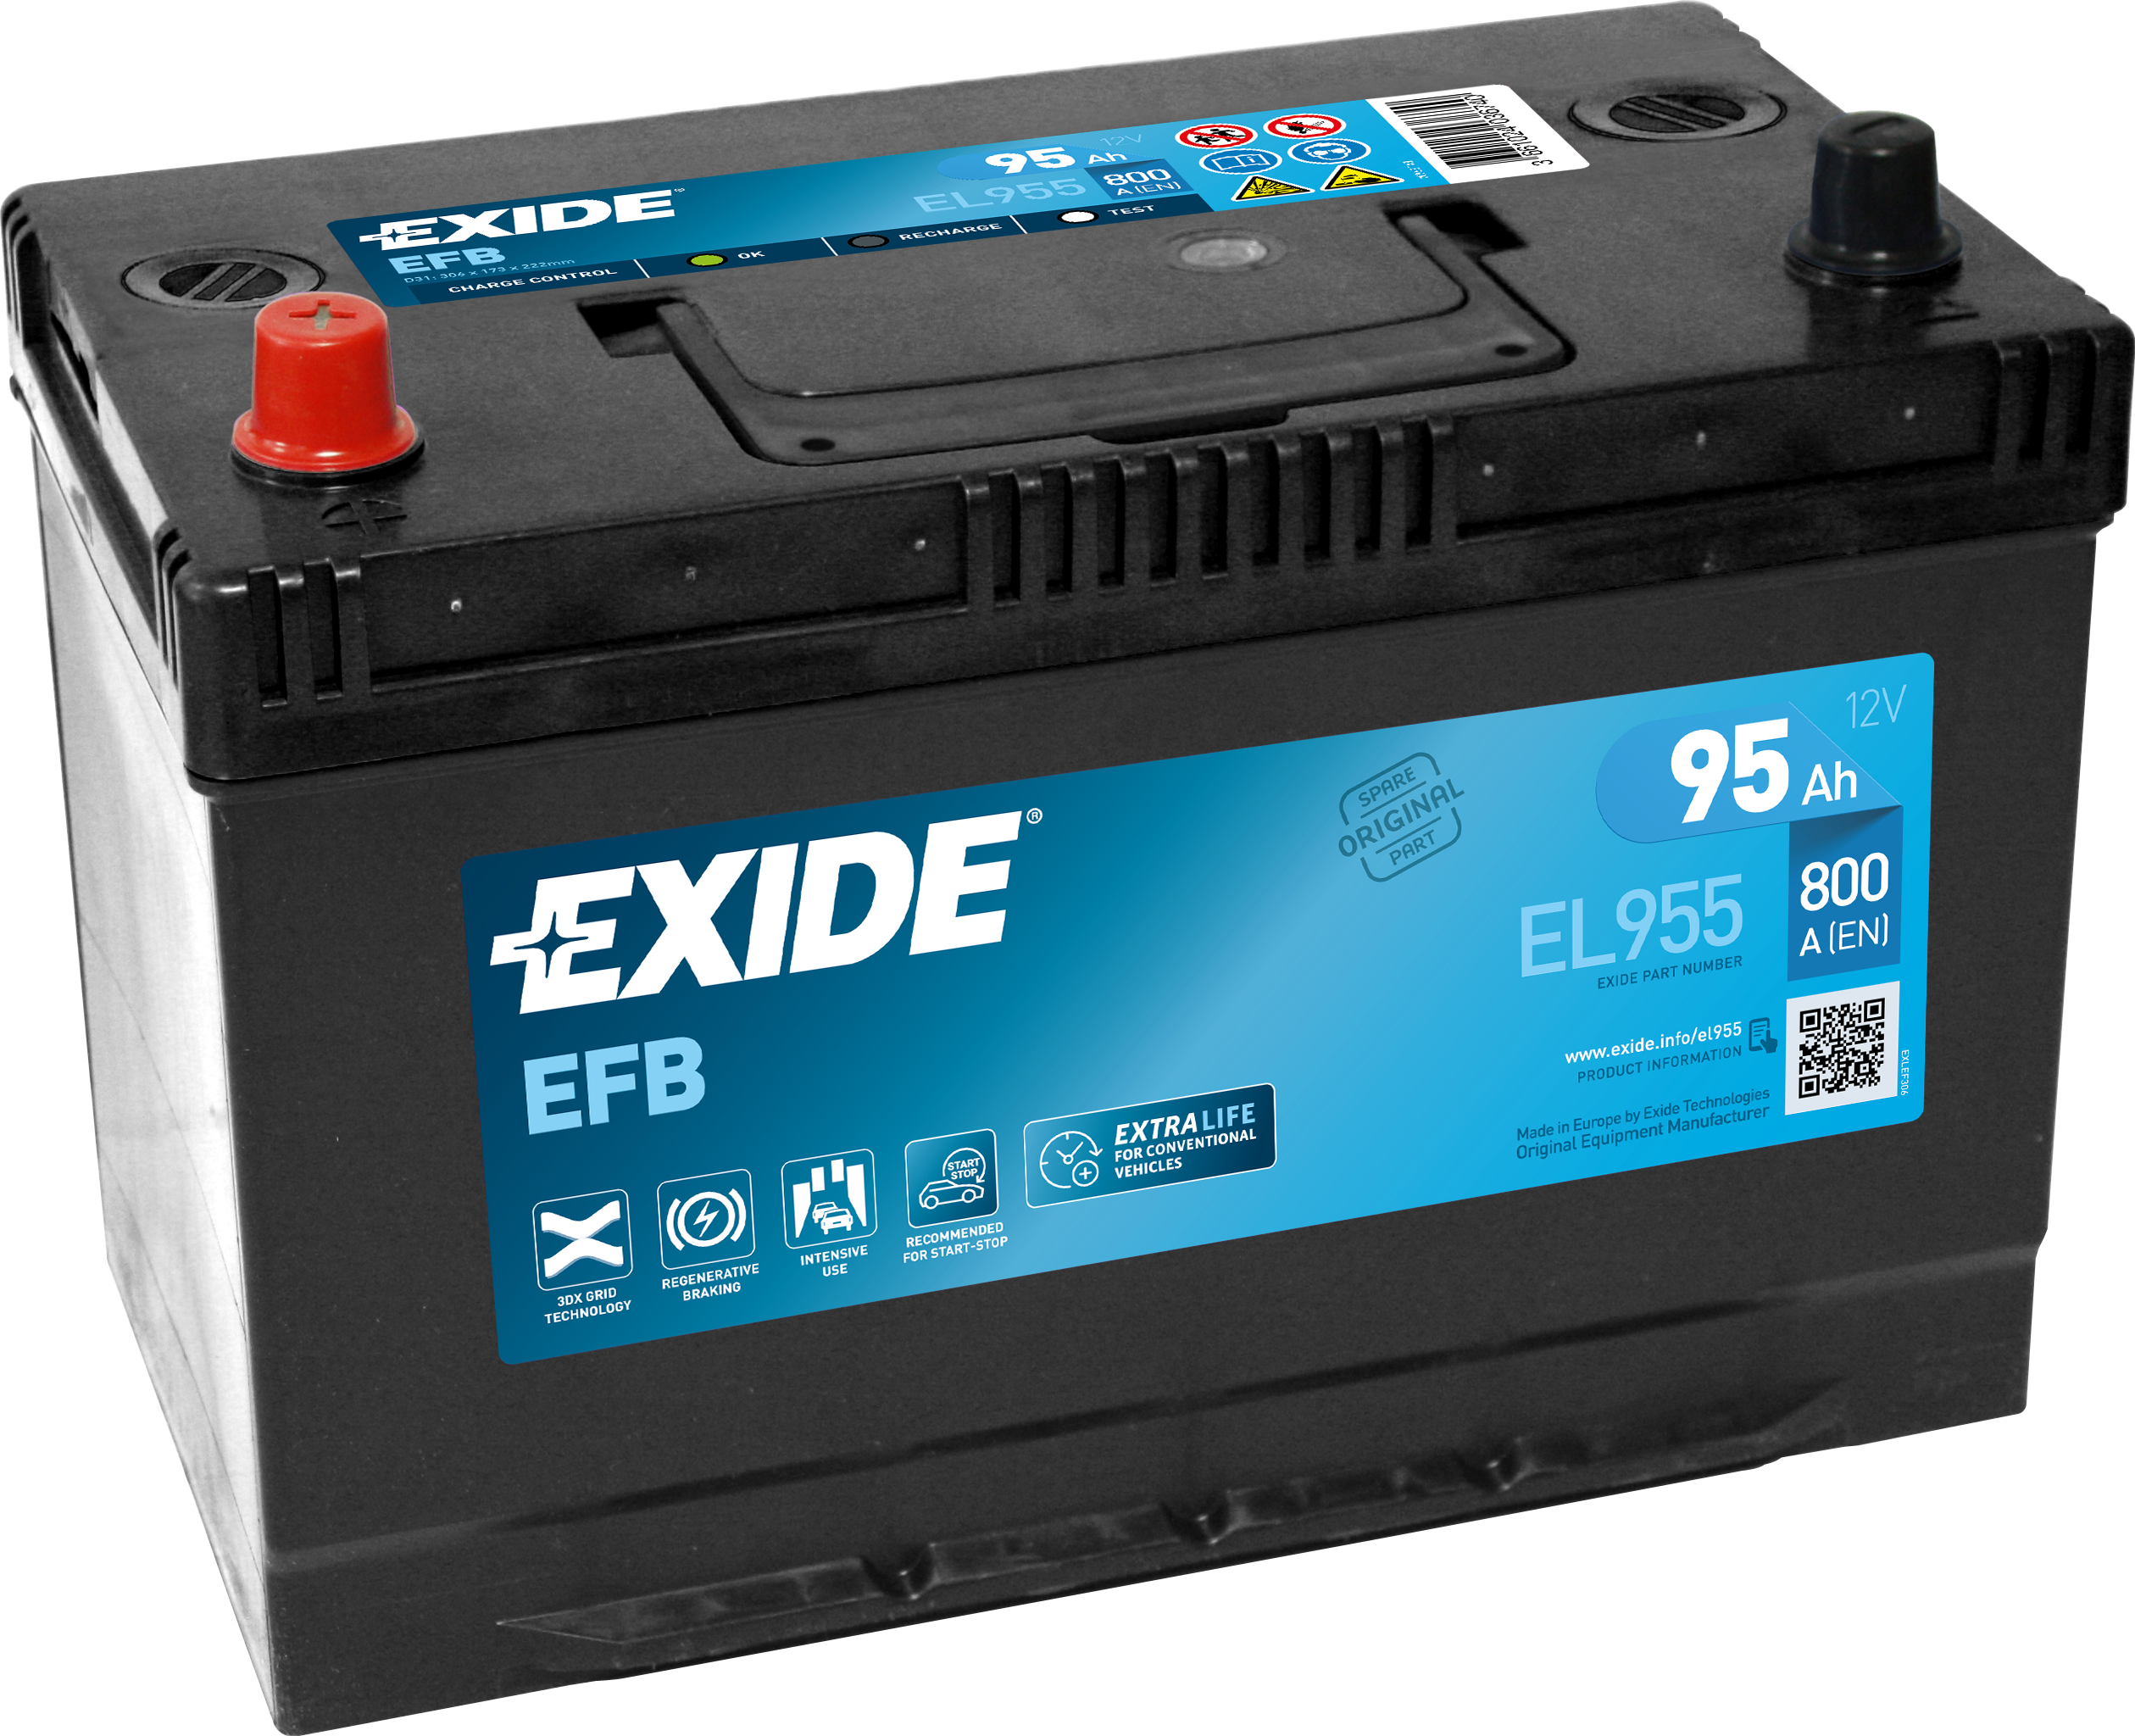 Batteria per auto Exide EL955 Polo positivo a Sinistra Start-Stop EFB 12V  95Ah 800A ordina su